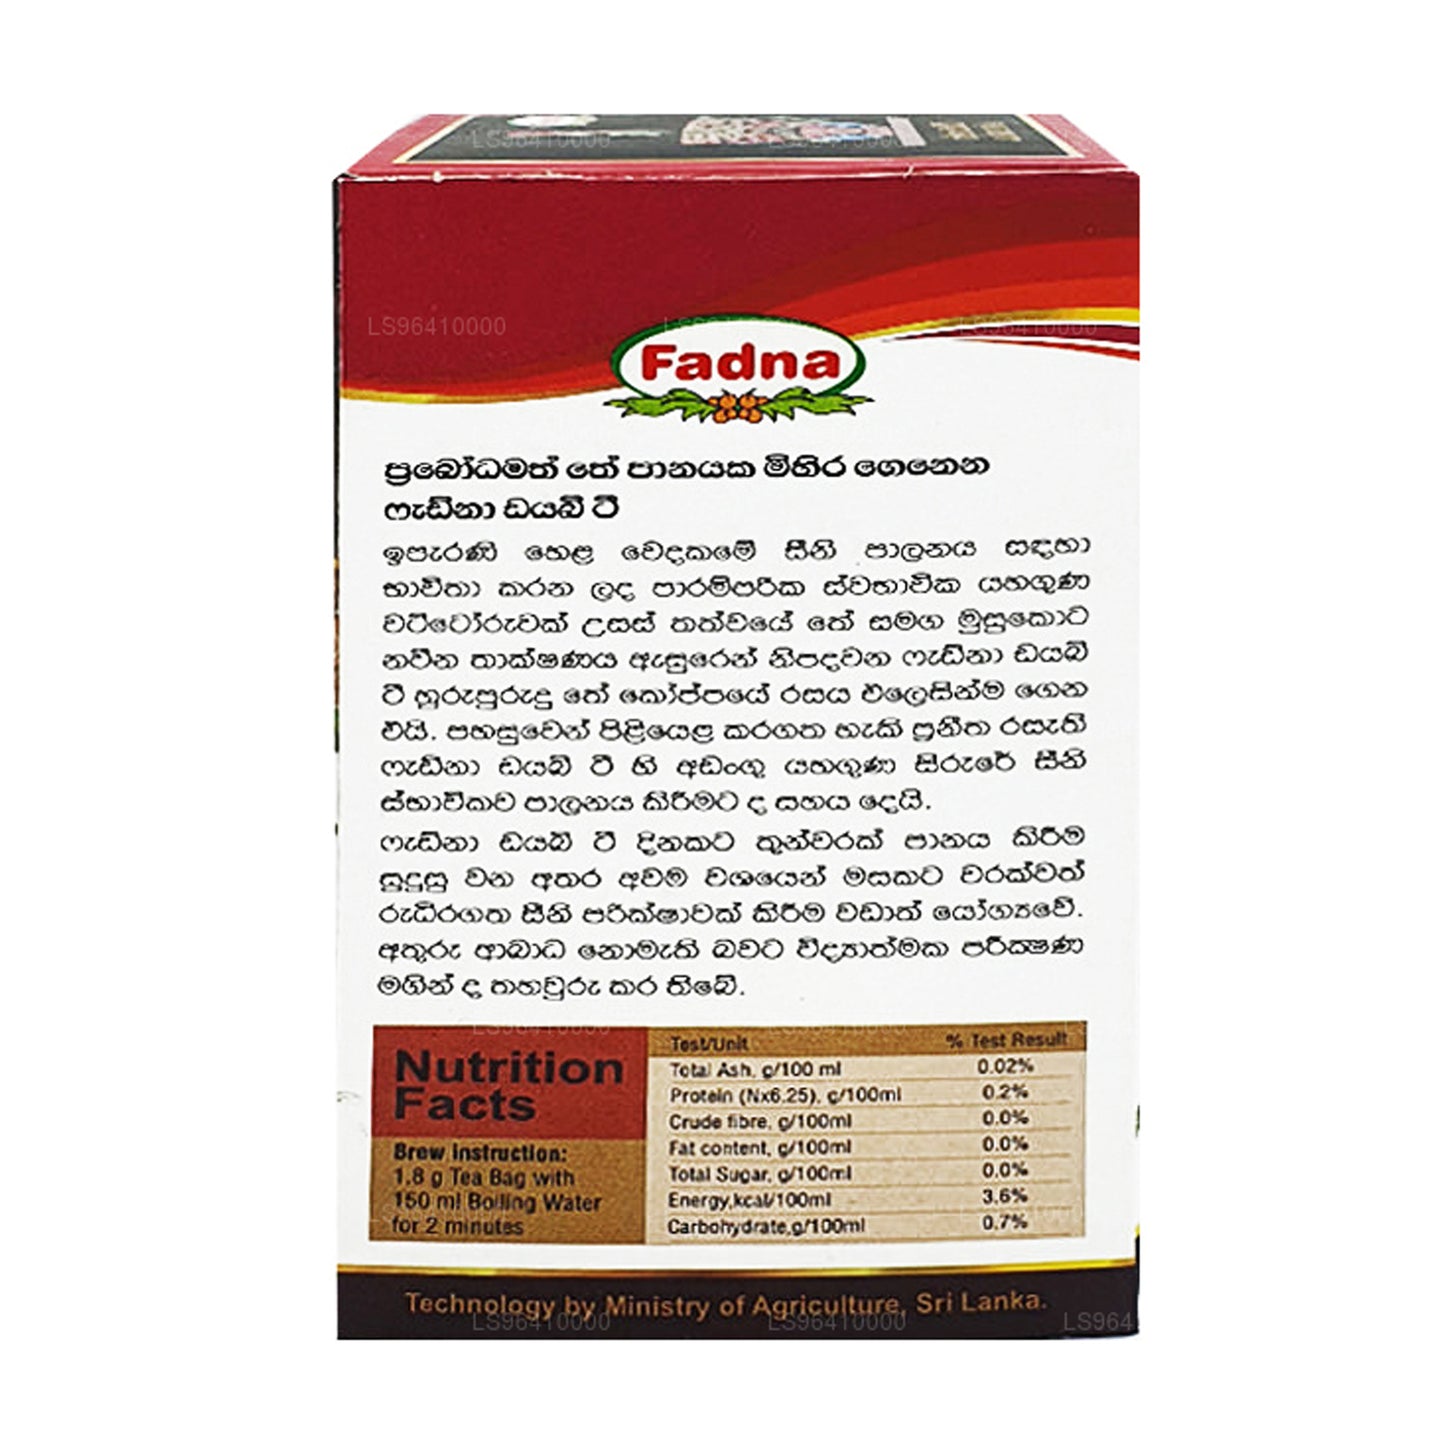 Fadna Diabe Tea (40g) 20 茶包